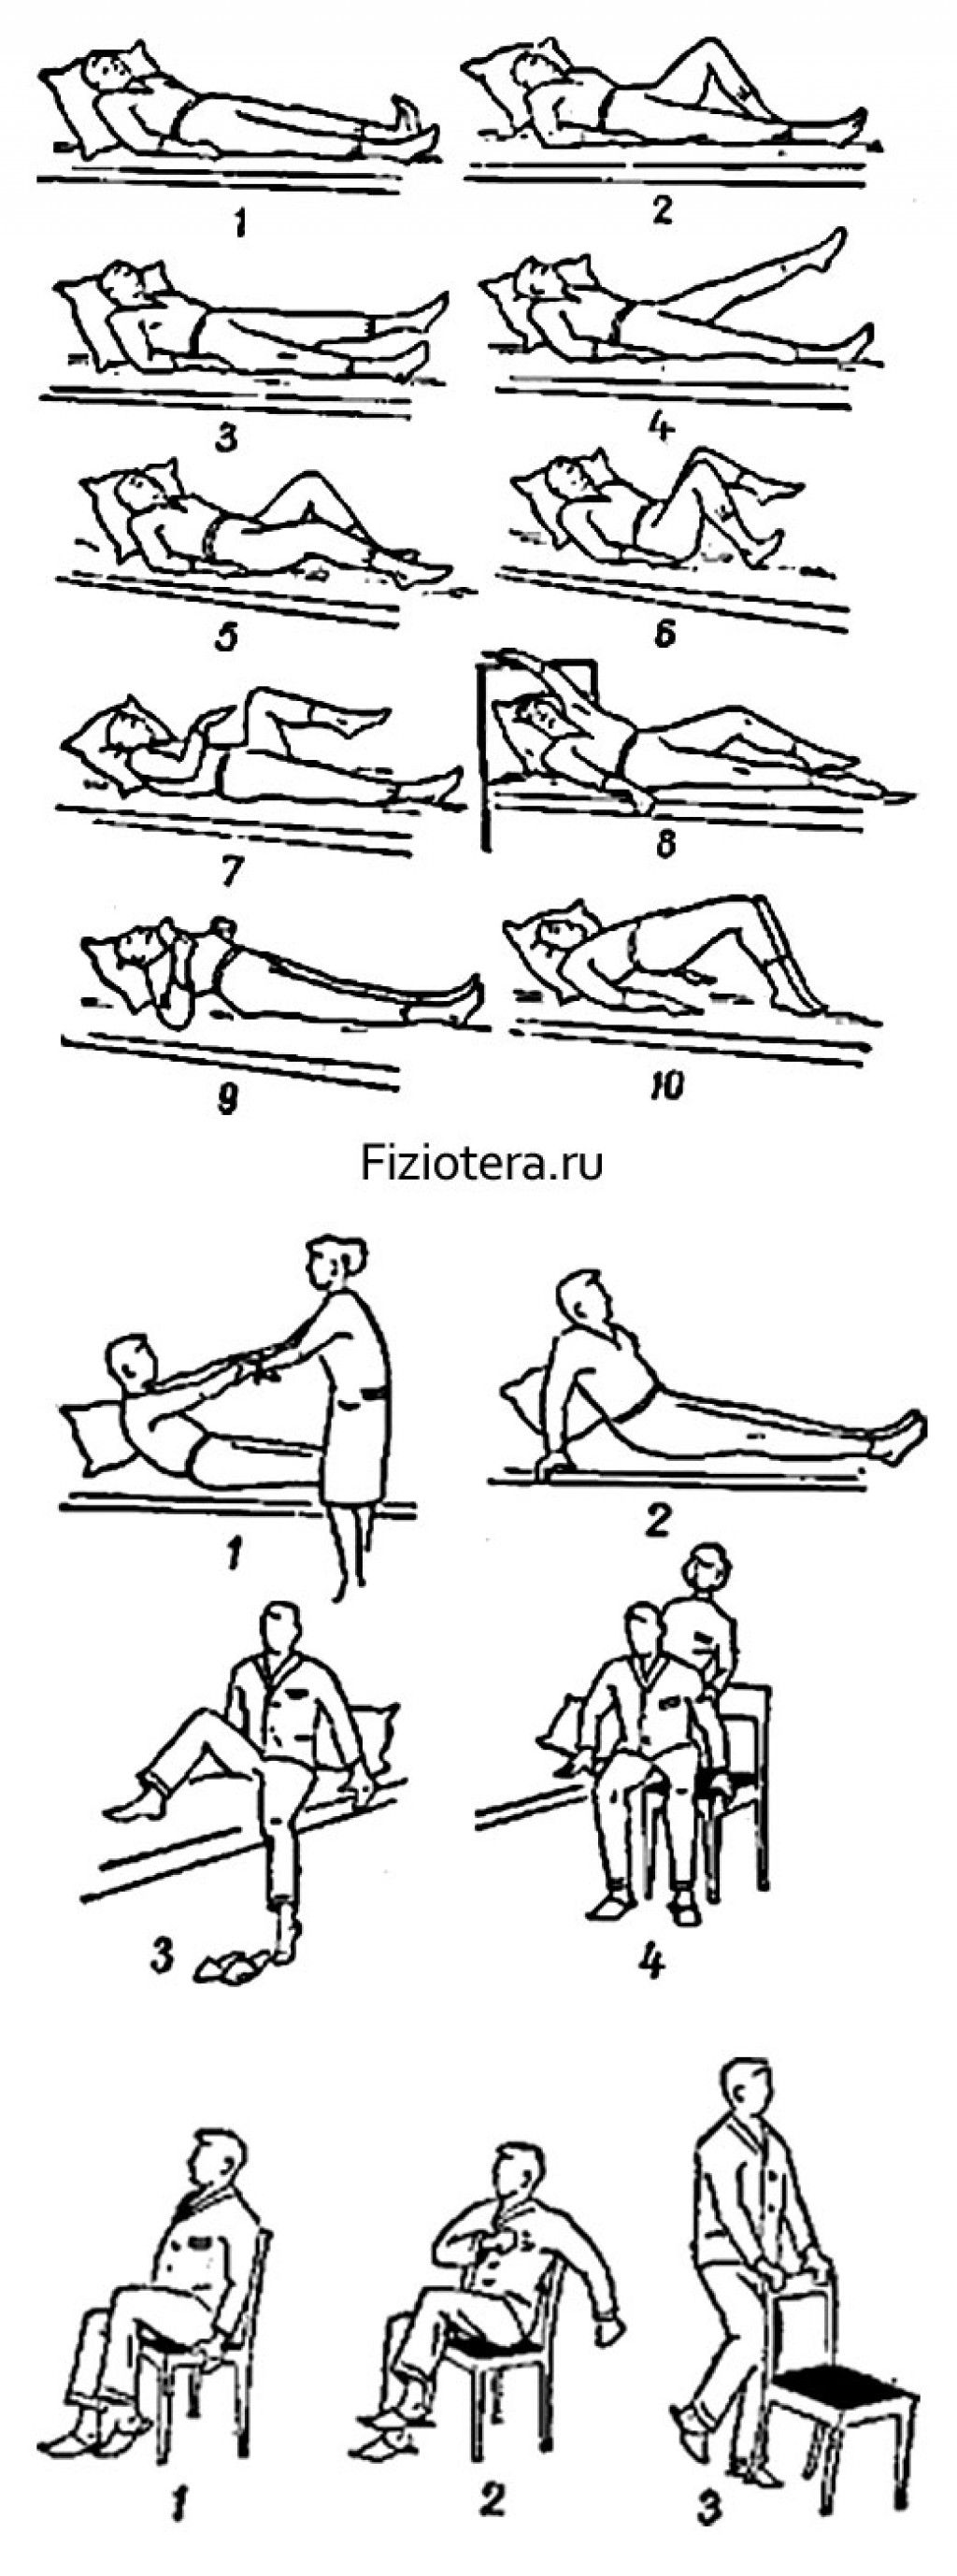 Инсульт занятия для восстановления. Комплекс лечебной гимнастики 1 при инфаркте миокарда. Комплекс упражнений при реабилитации после инсульта. Лечебная физкультура в период реабилитации после инфаркта миокарда. ЛФК после инфаркта комплекс упражнений.